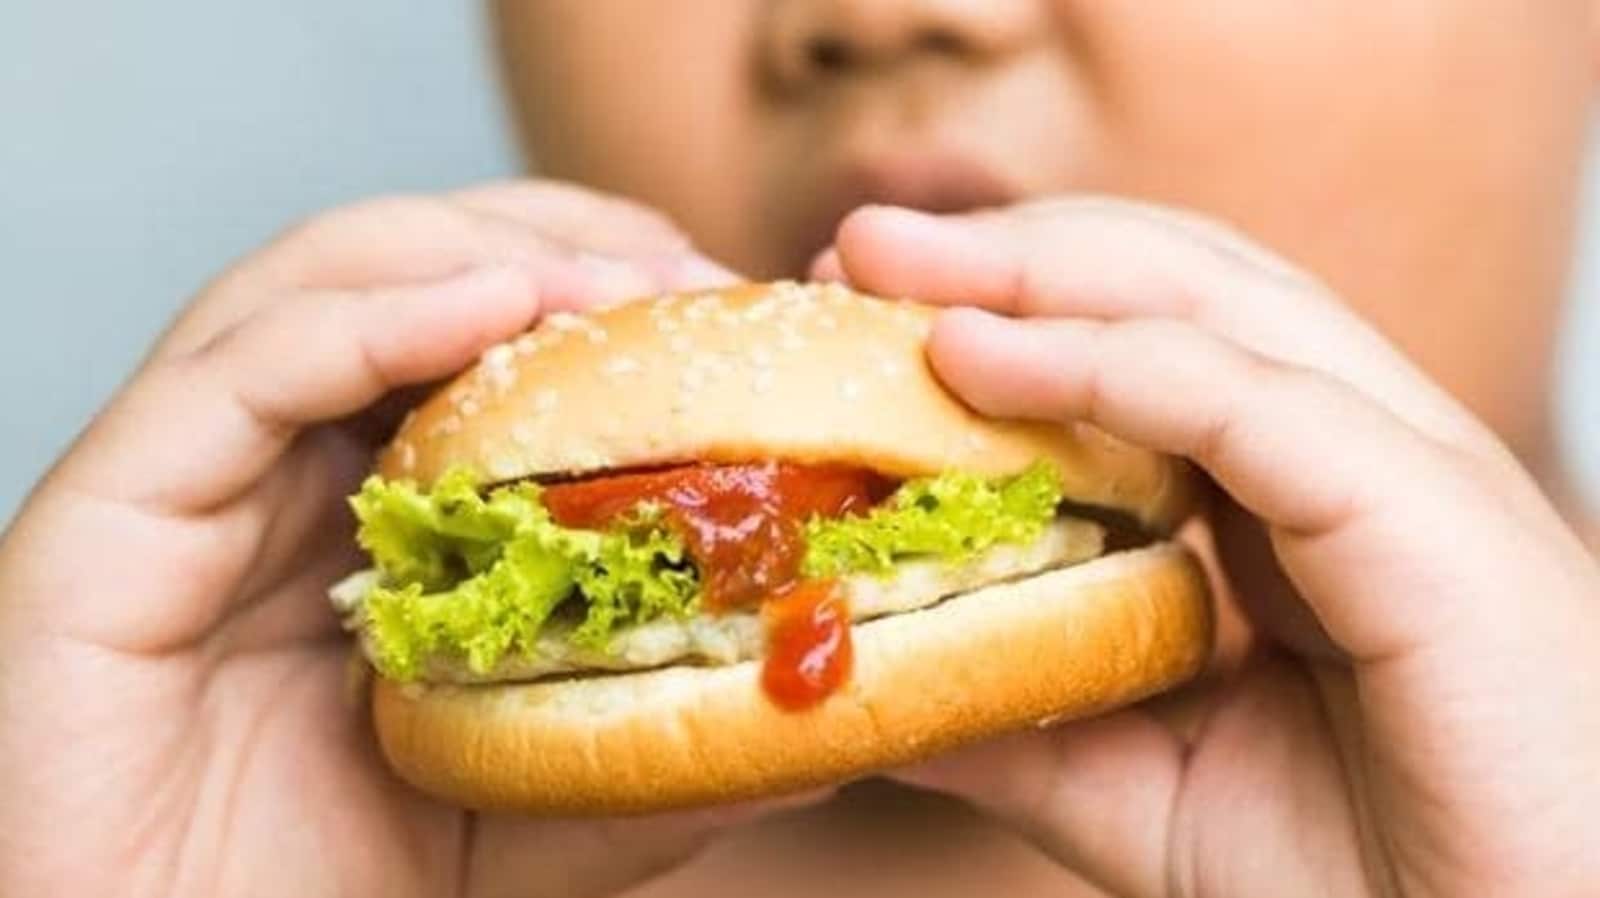 बचपन में मोटापा बढ़ रहा है: बच्चों में जंक फूड की लत से निपटने के 6 प्रभावी तरीके